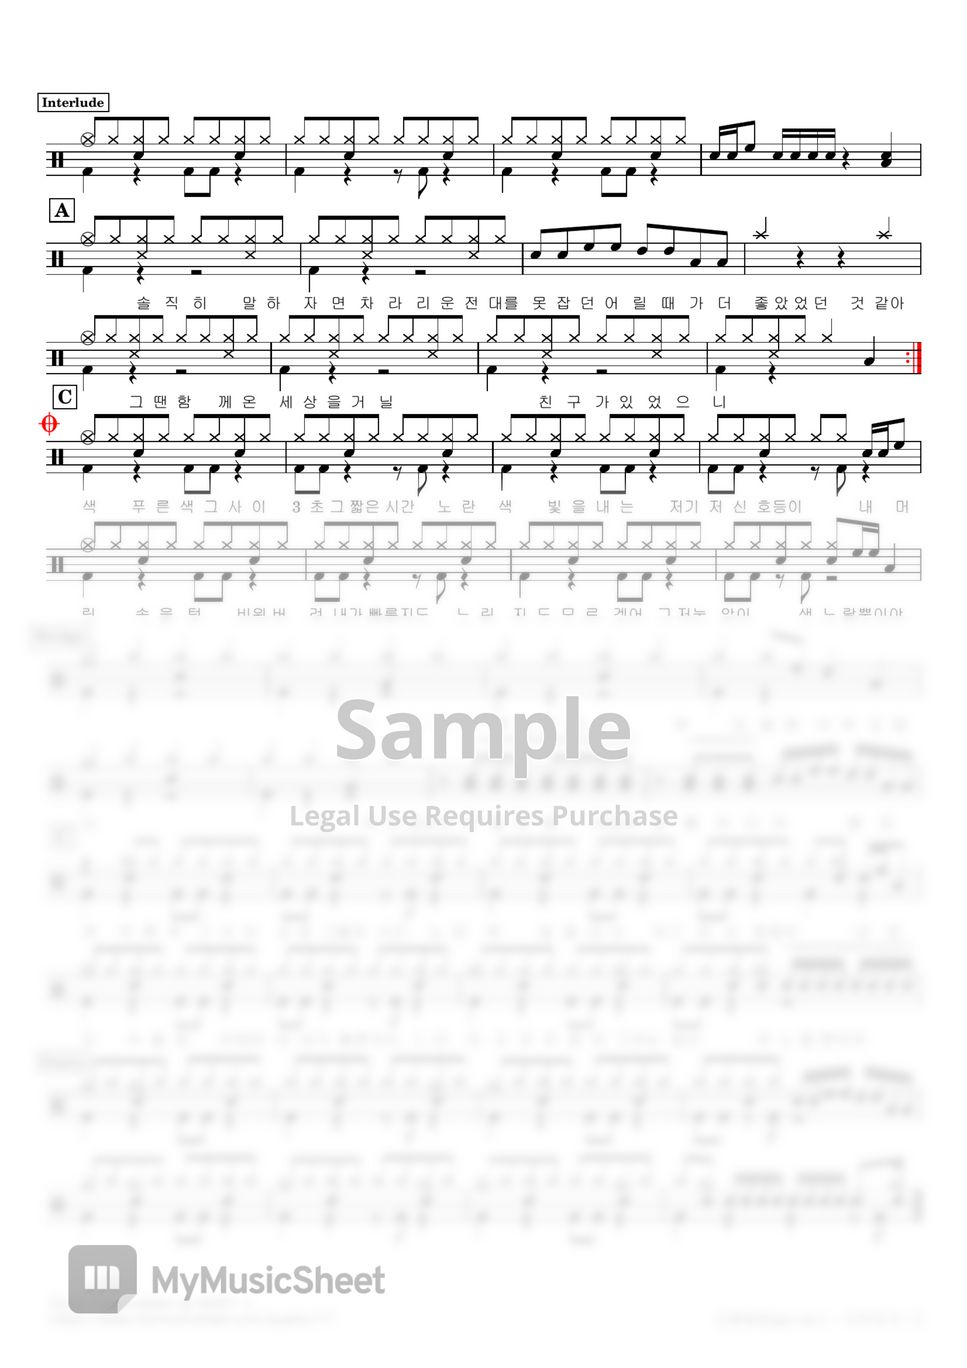 Lee Mujin - Traffic Light(Easy ver.) (Drum sheet / Easy ver. / Including lyrics) by NOEY :)